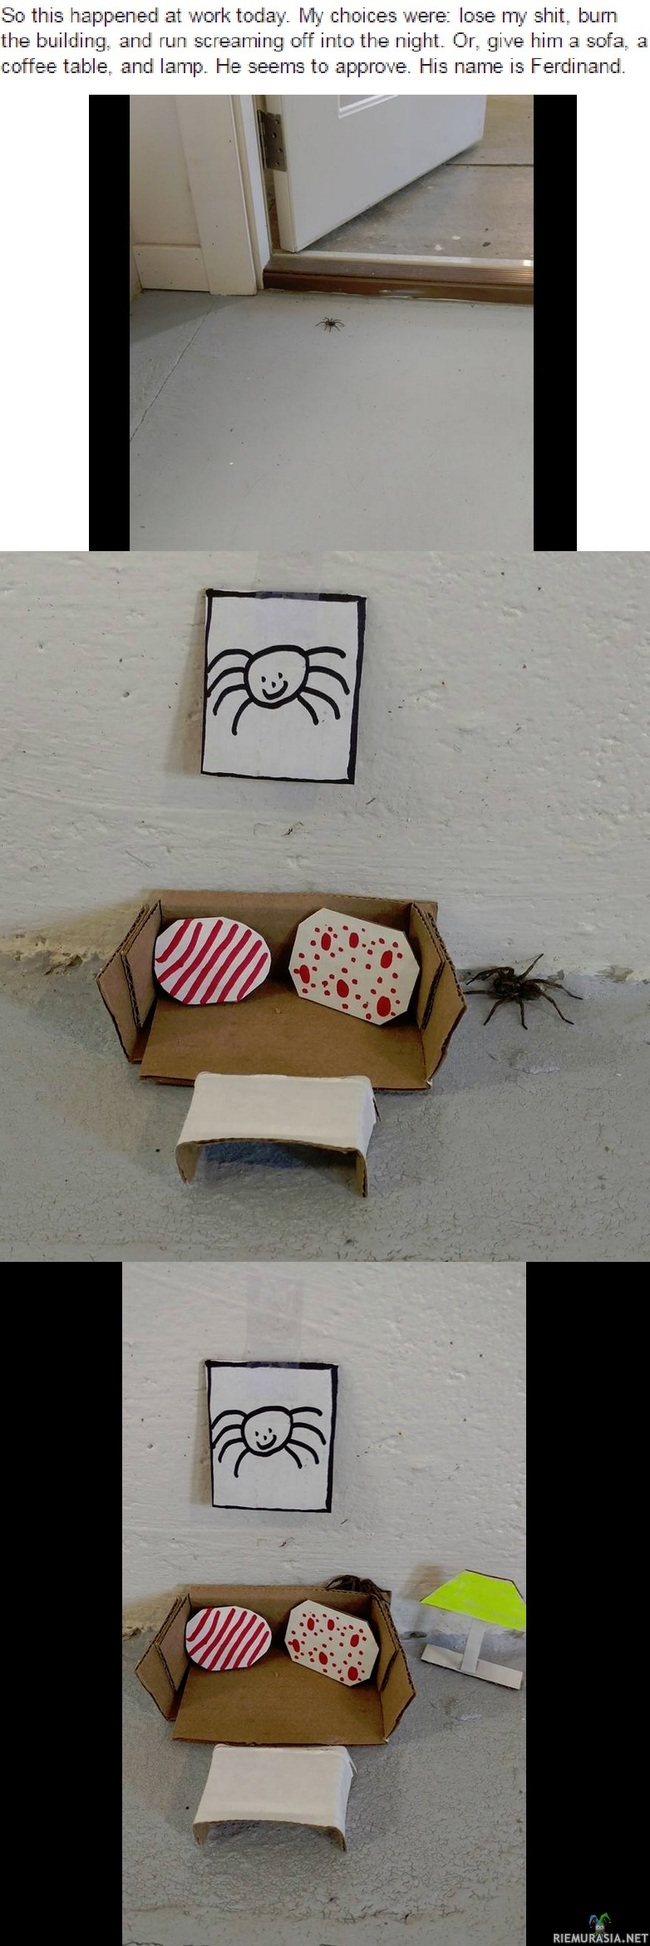 Löytynyt pieni hämähäkki